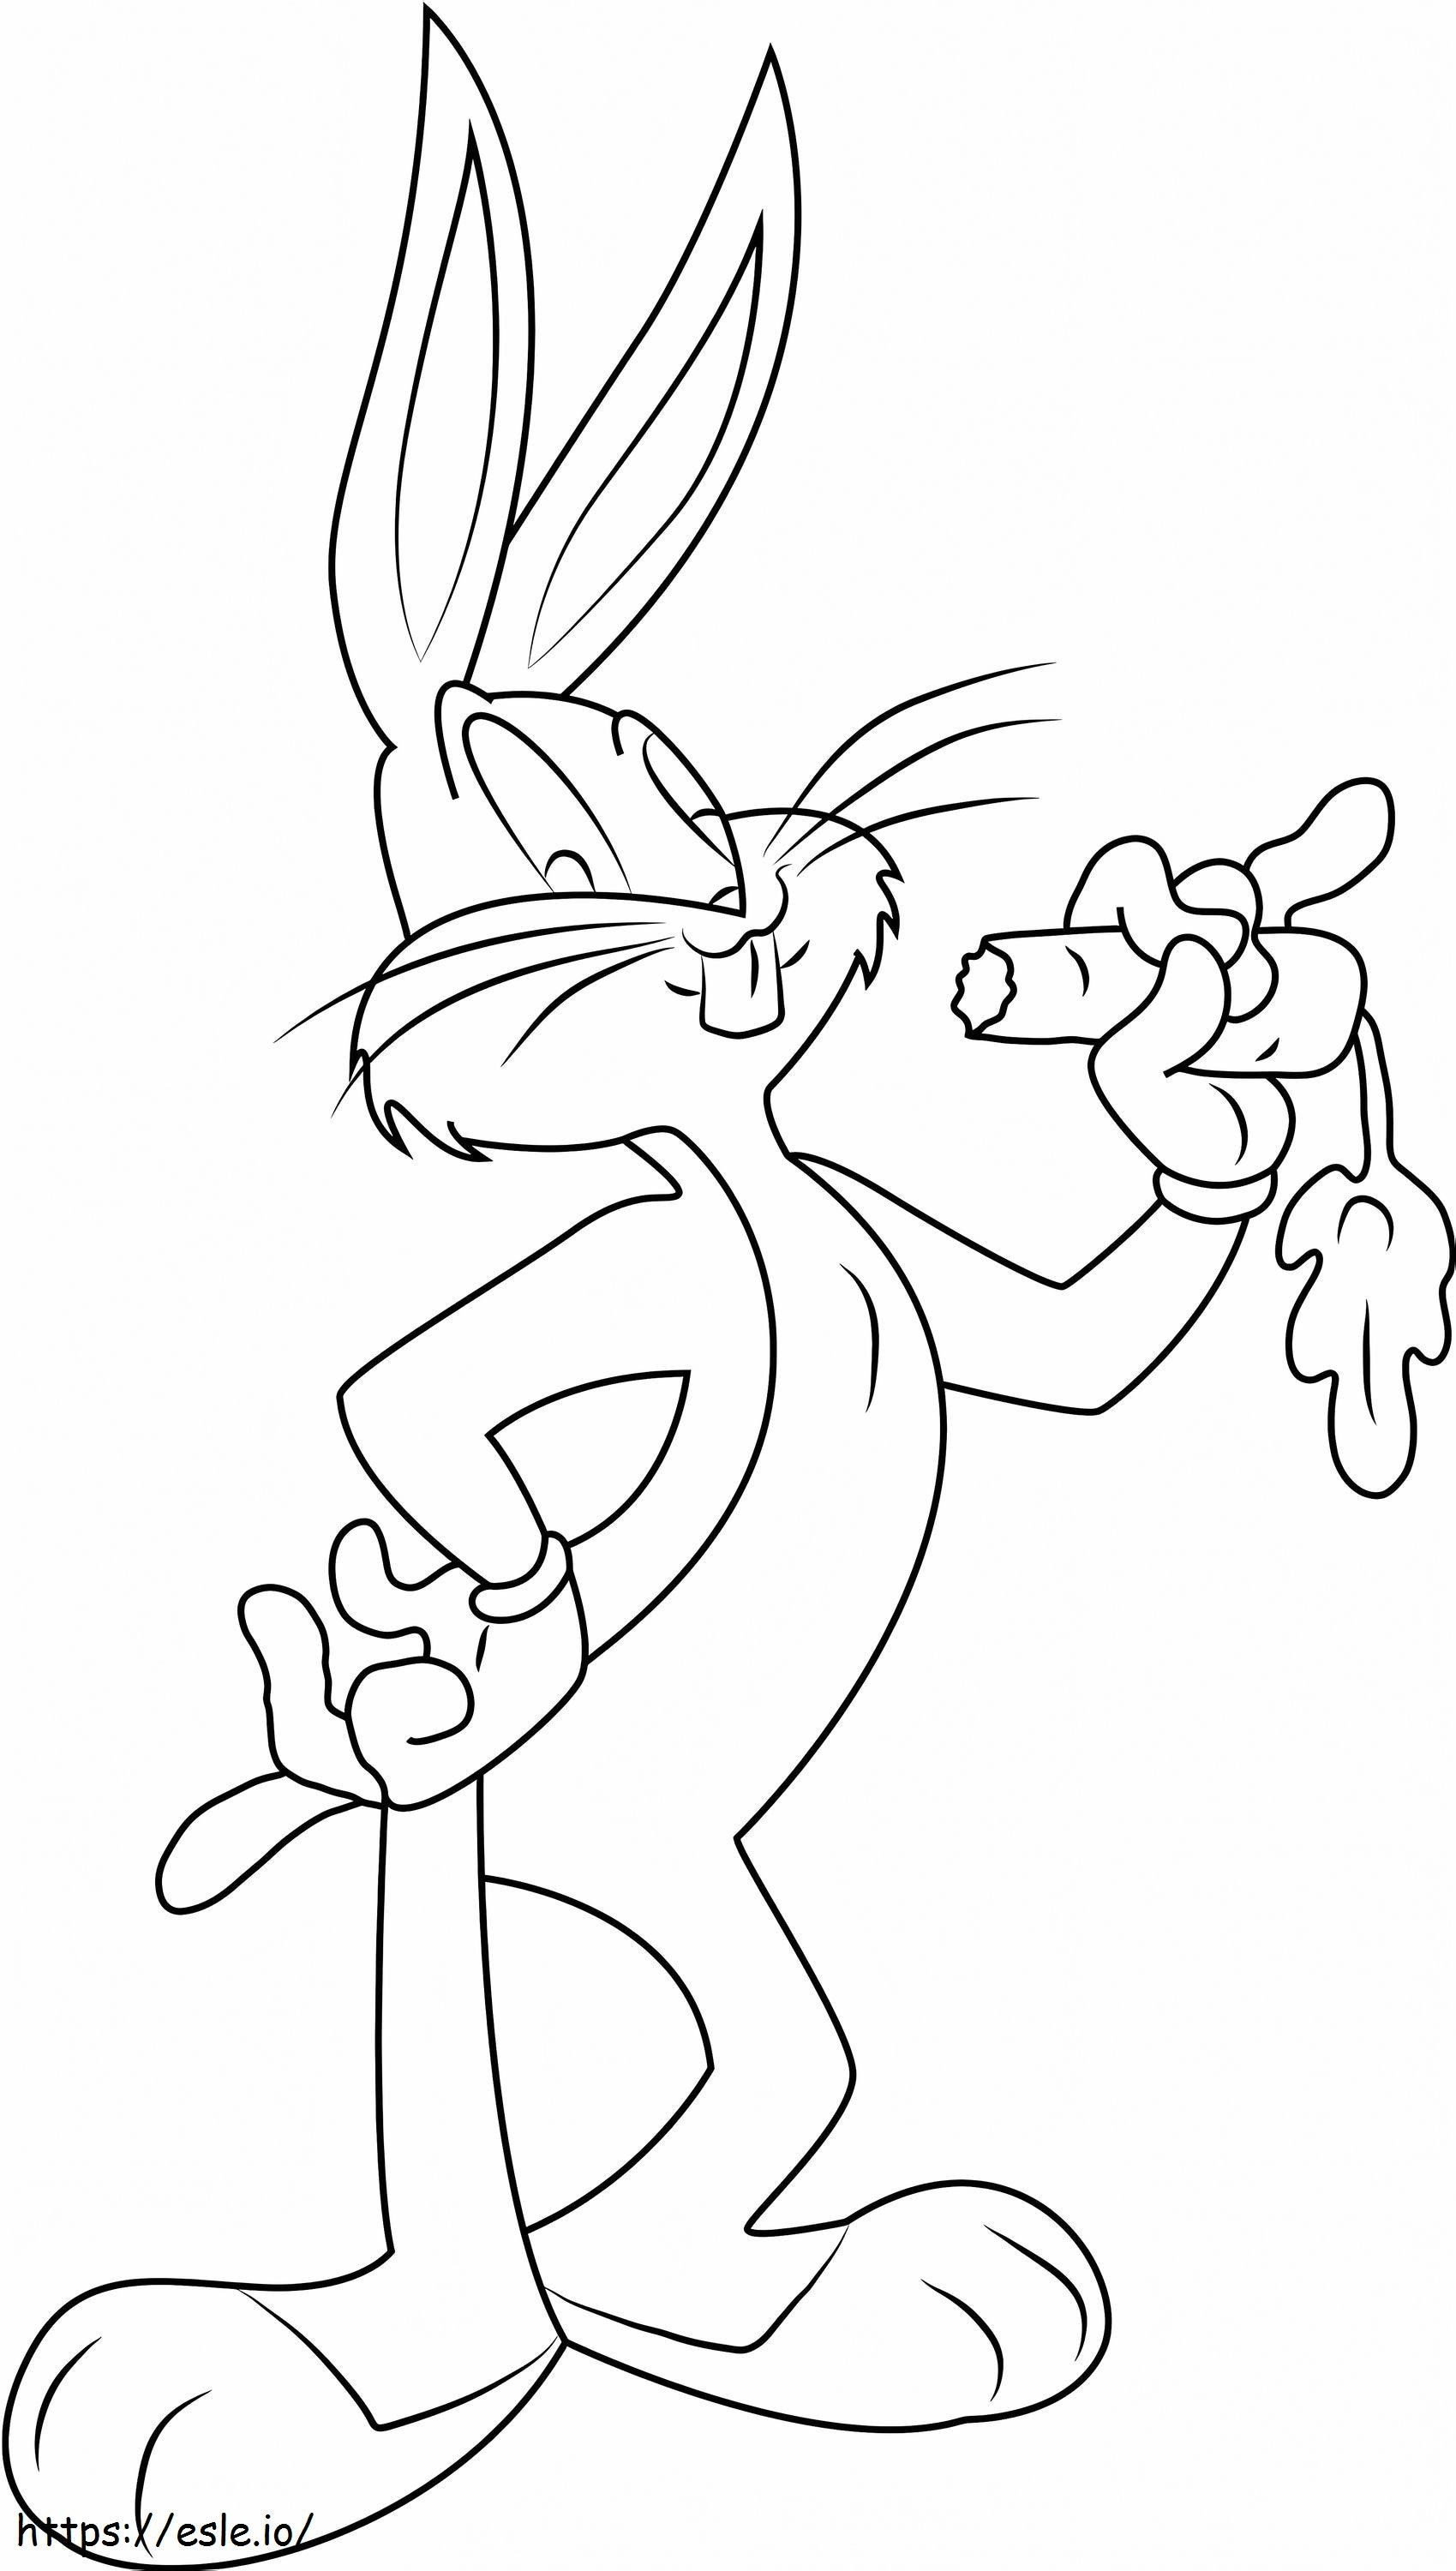  Bugs Bunny isst Karotte1 ausmalbilder